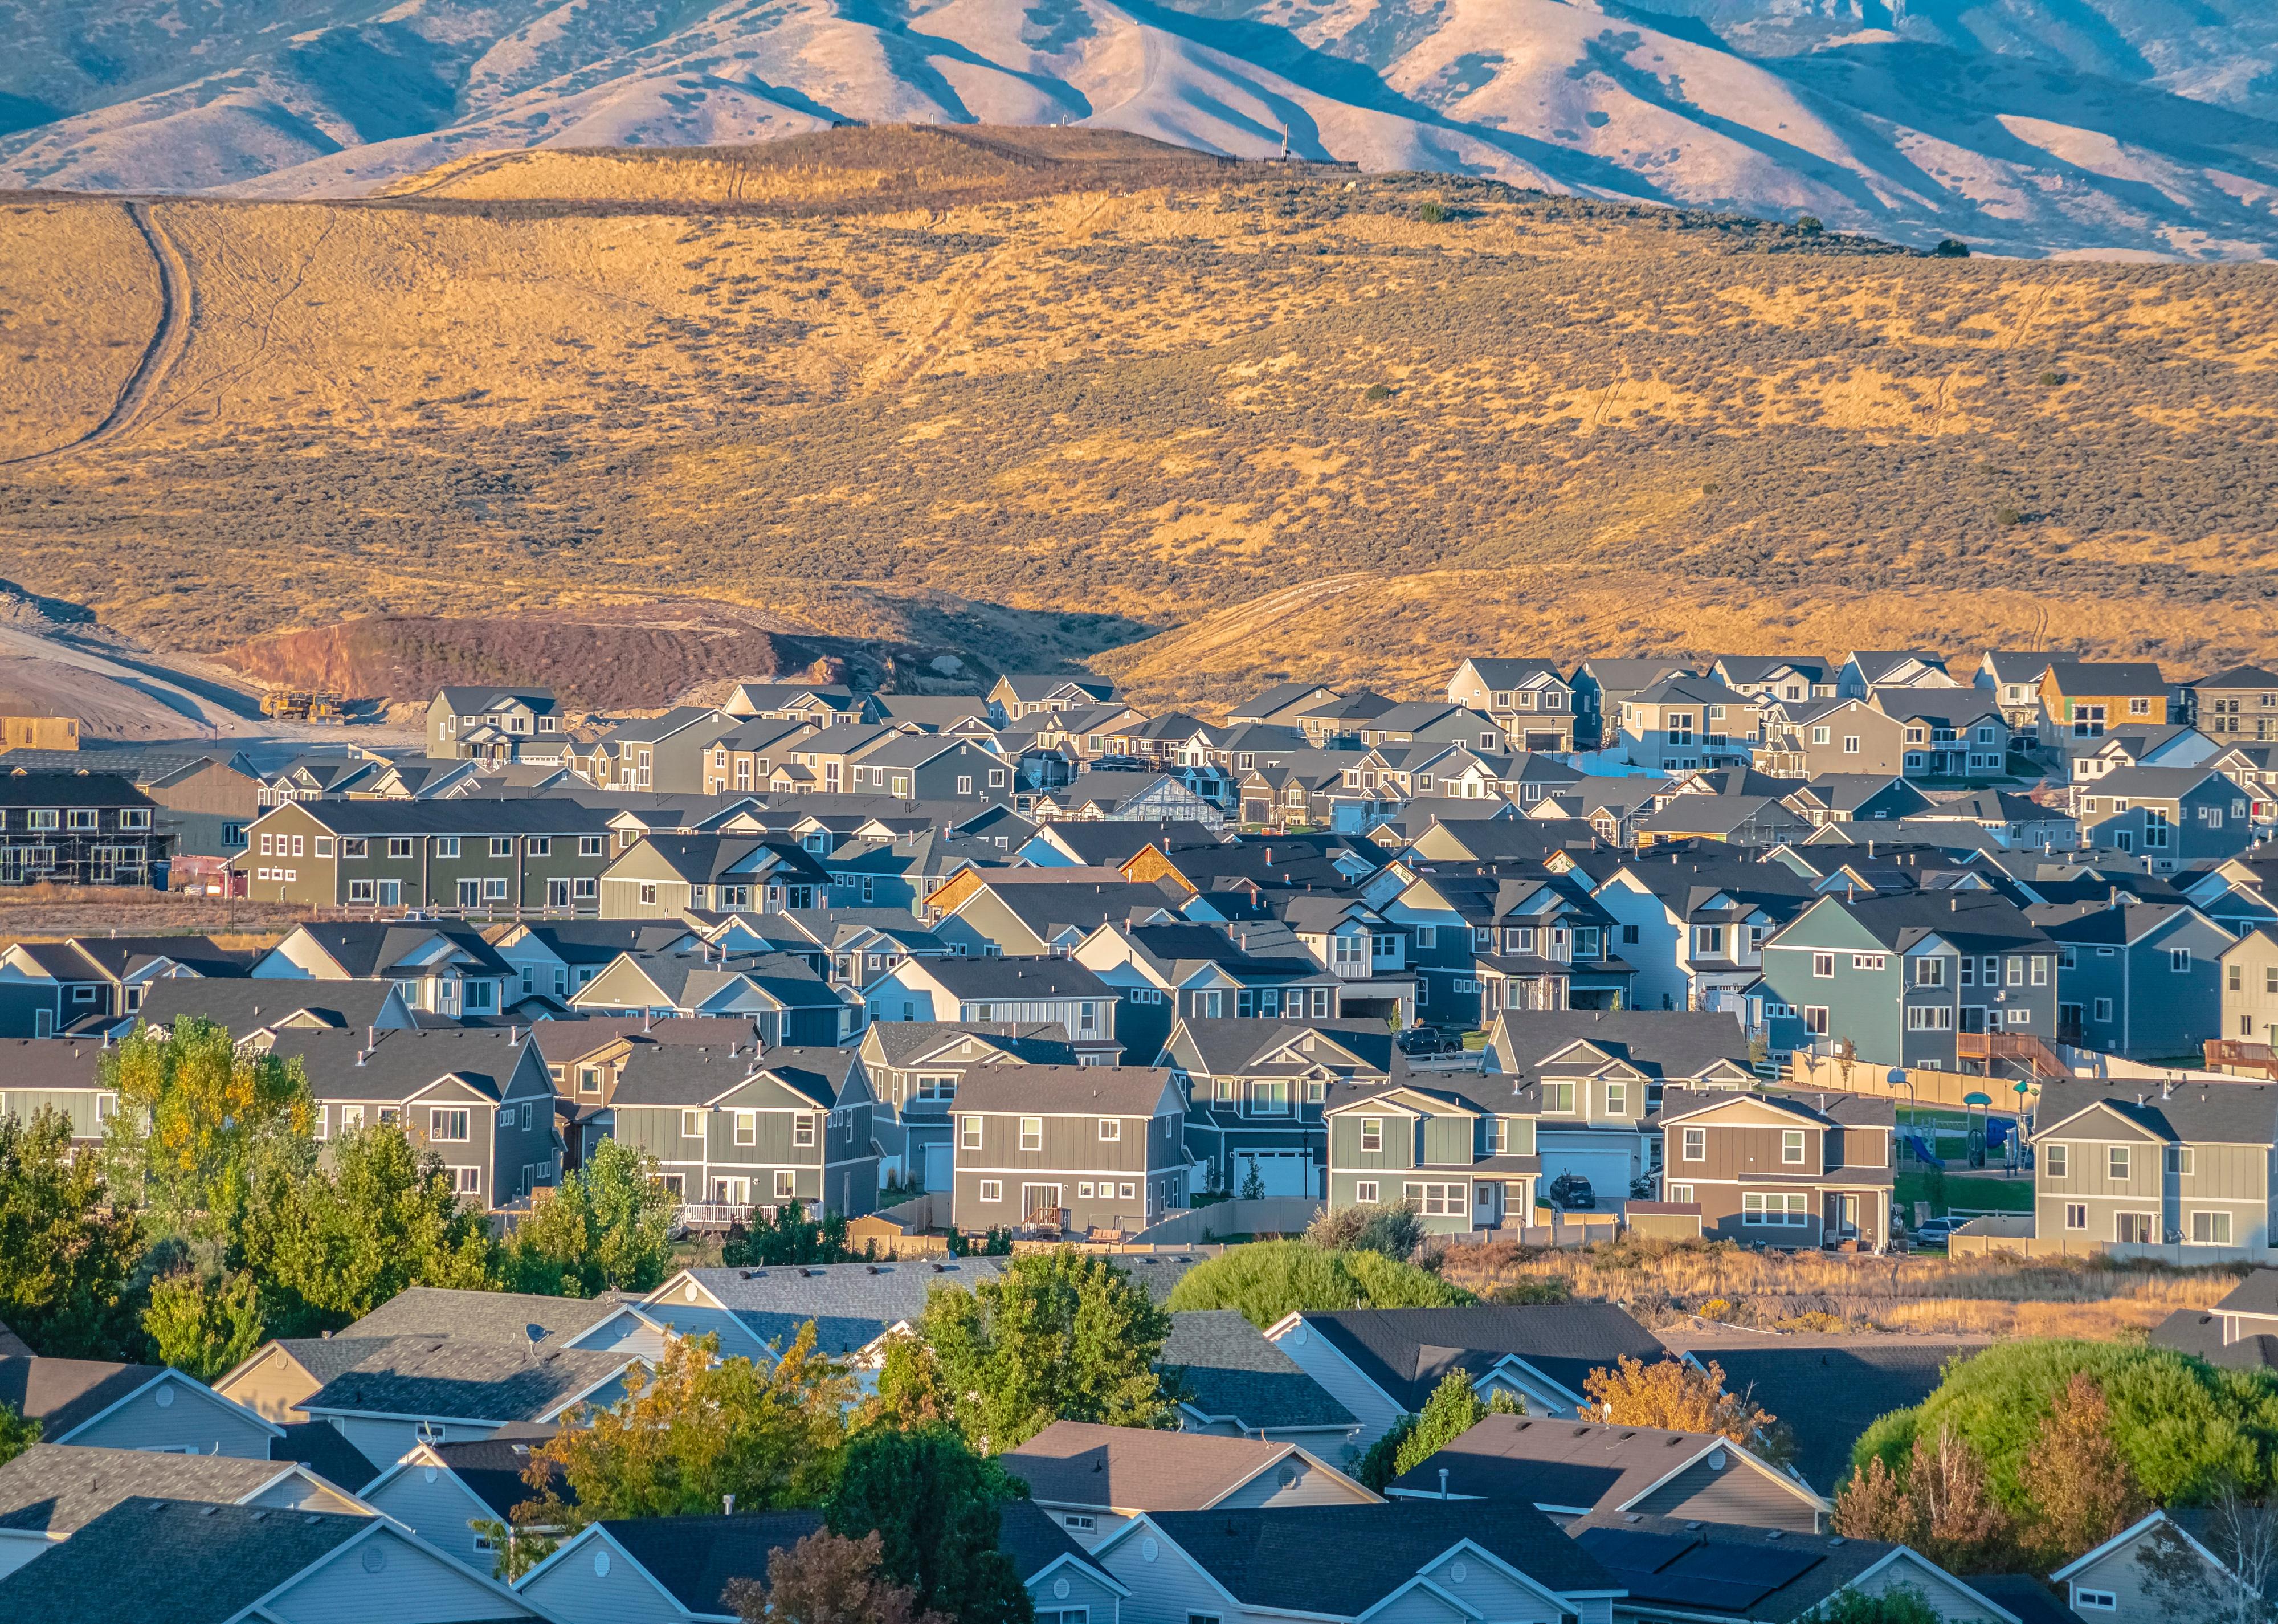 Houses in a town in Utah valley.